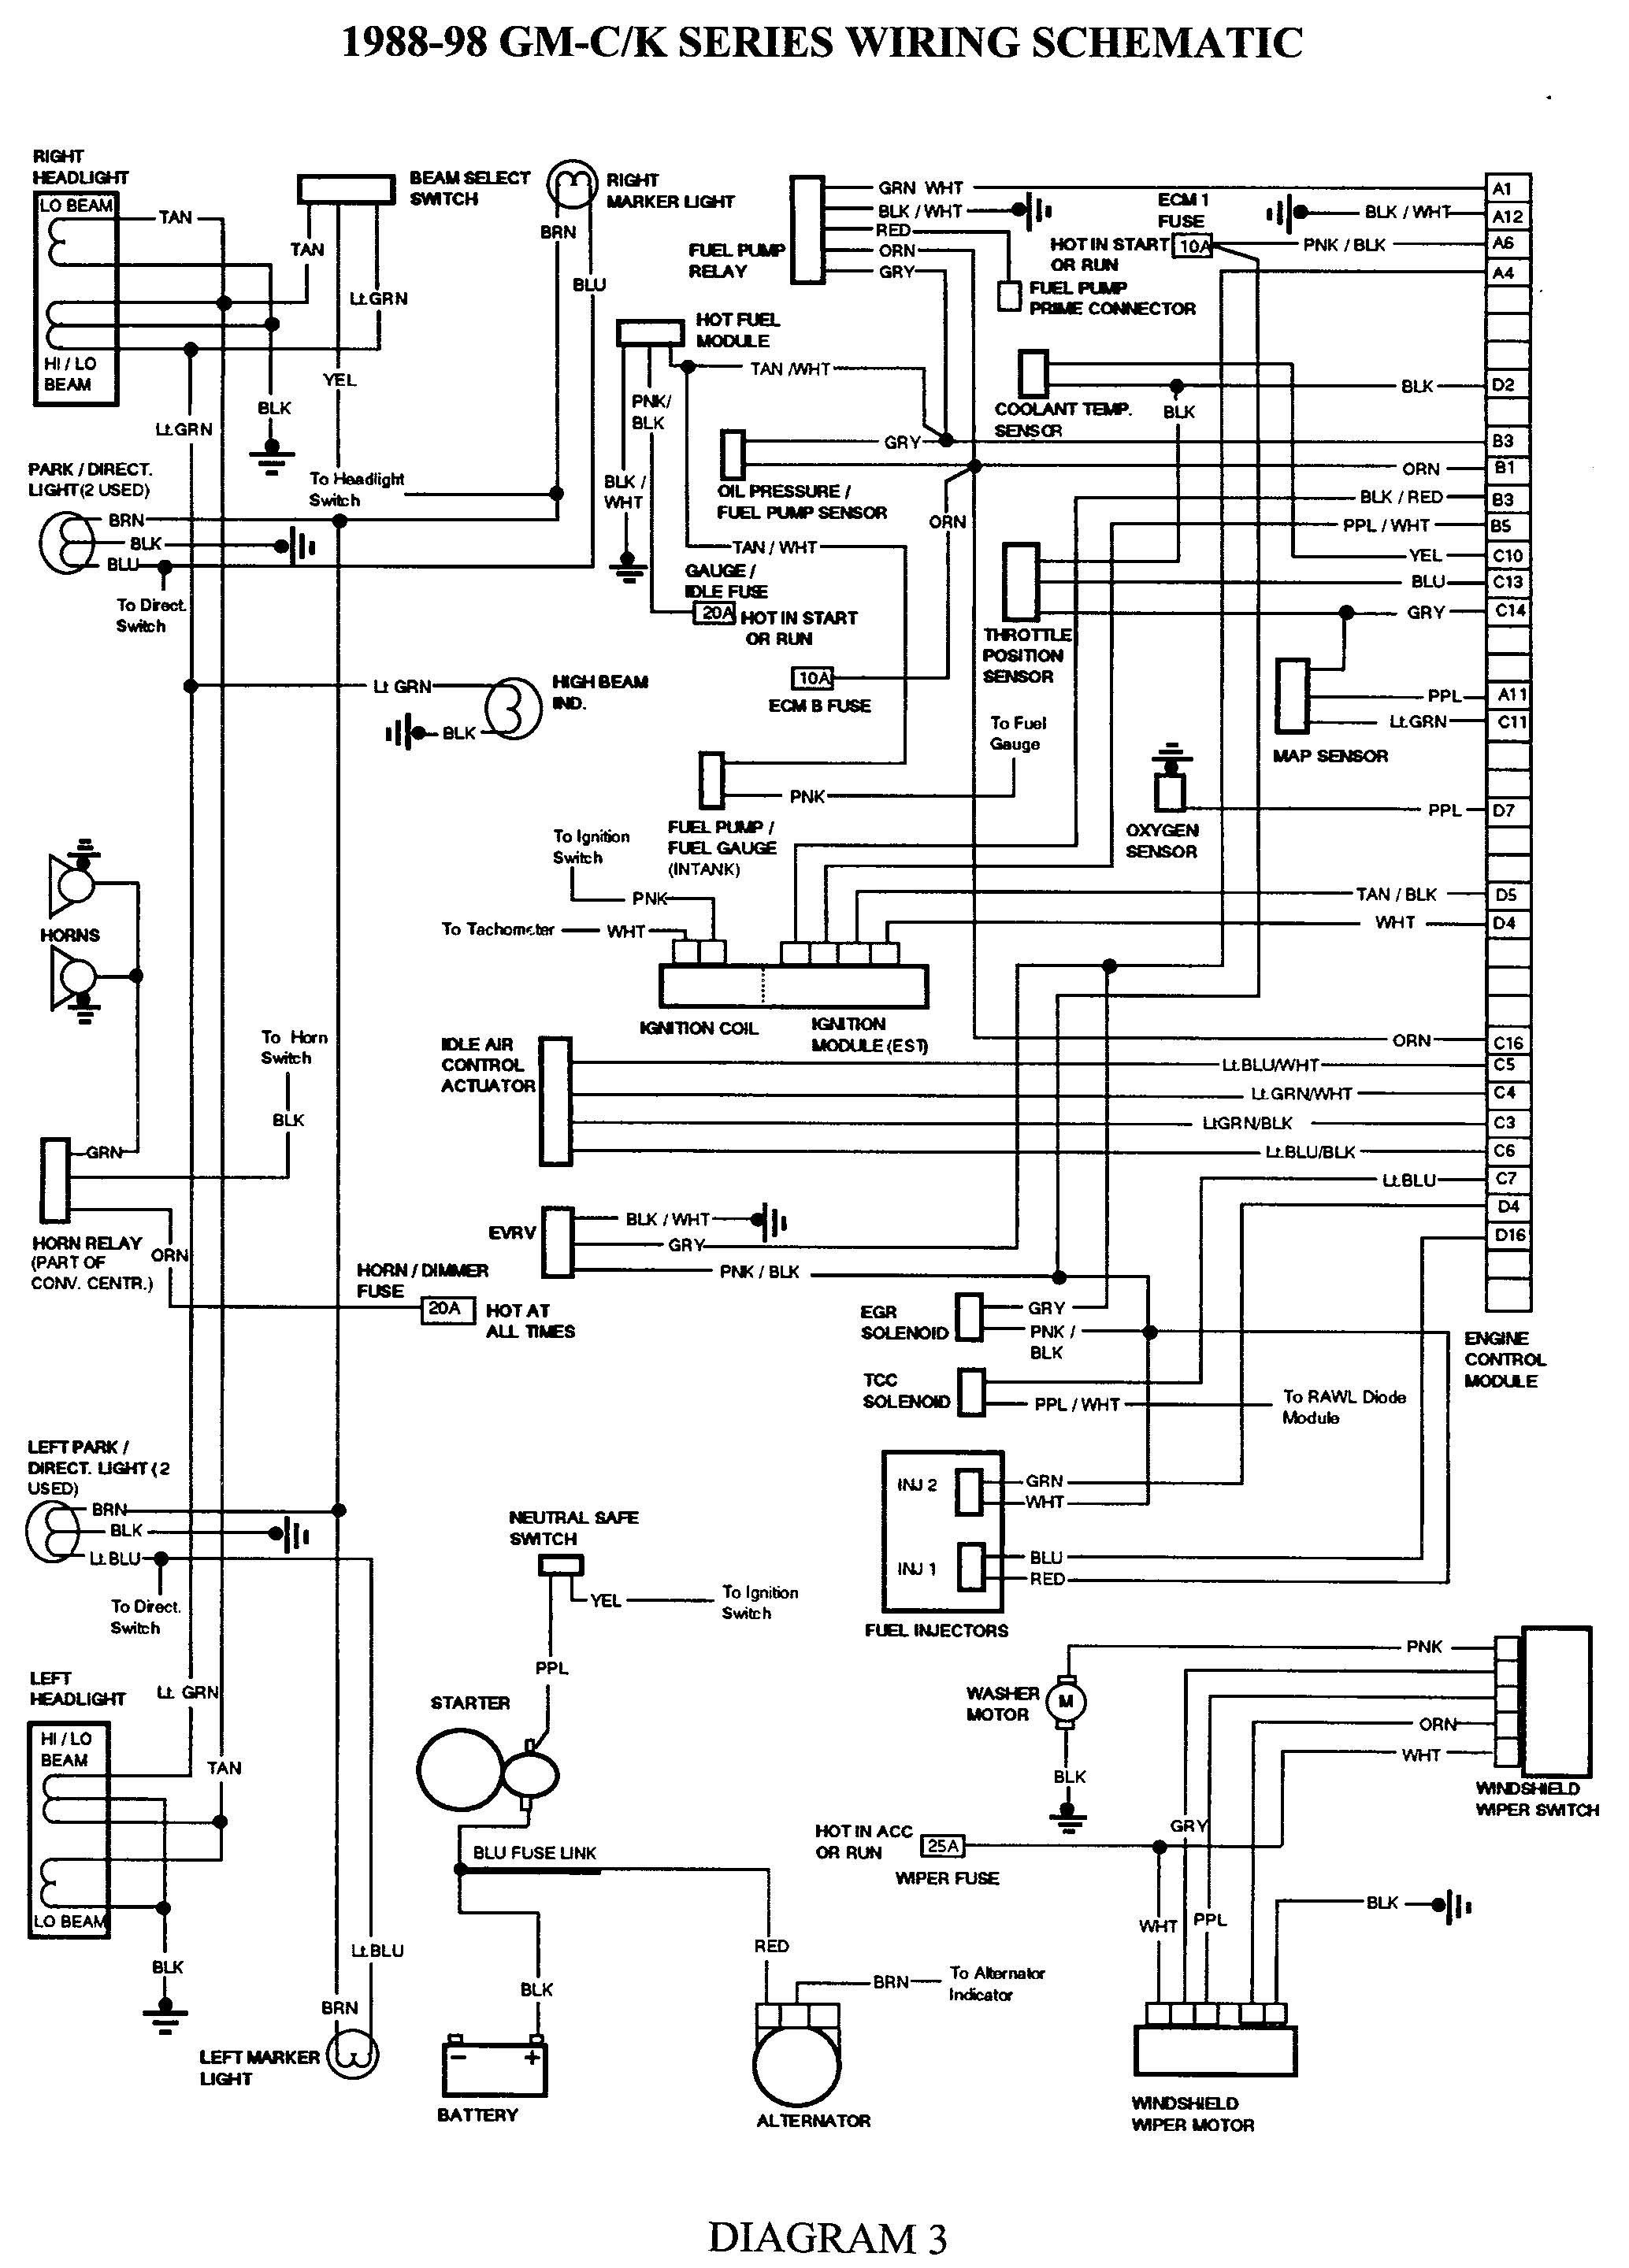 2002 Passat Engine Diagram Wiring Diagram 2008 Tahoe Experts Wiring Diagram • Of 2002 Passat Engine Diagram